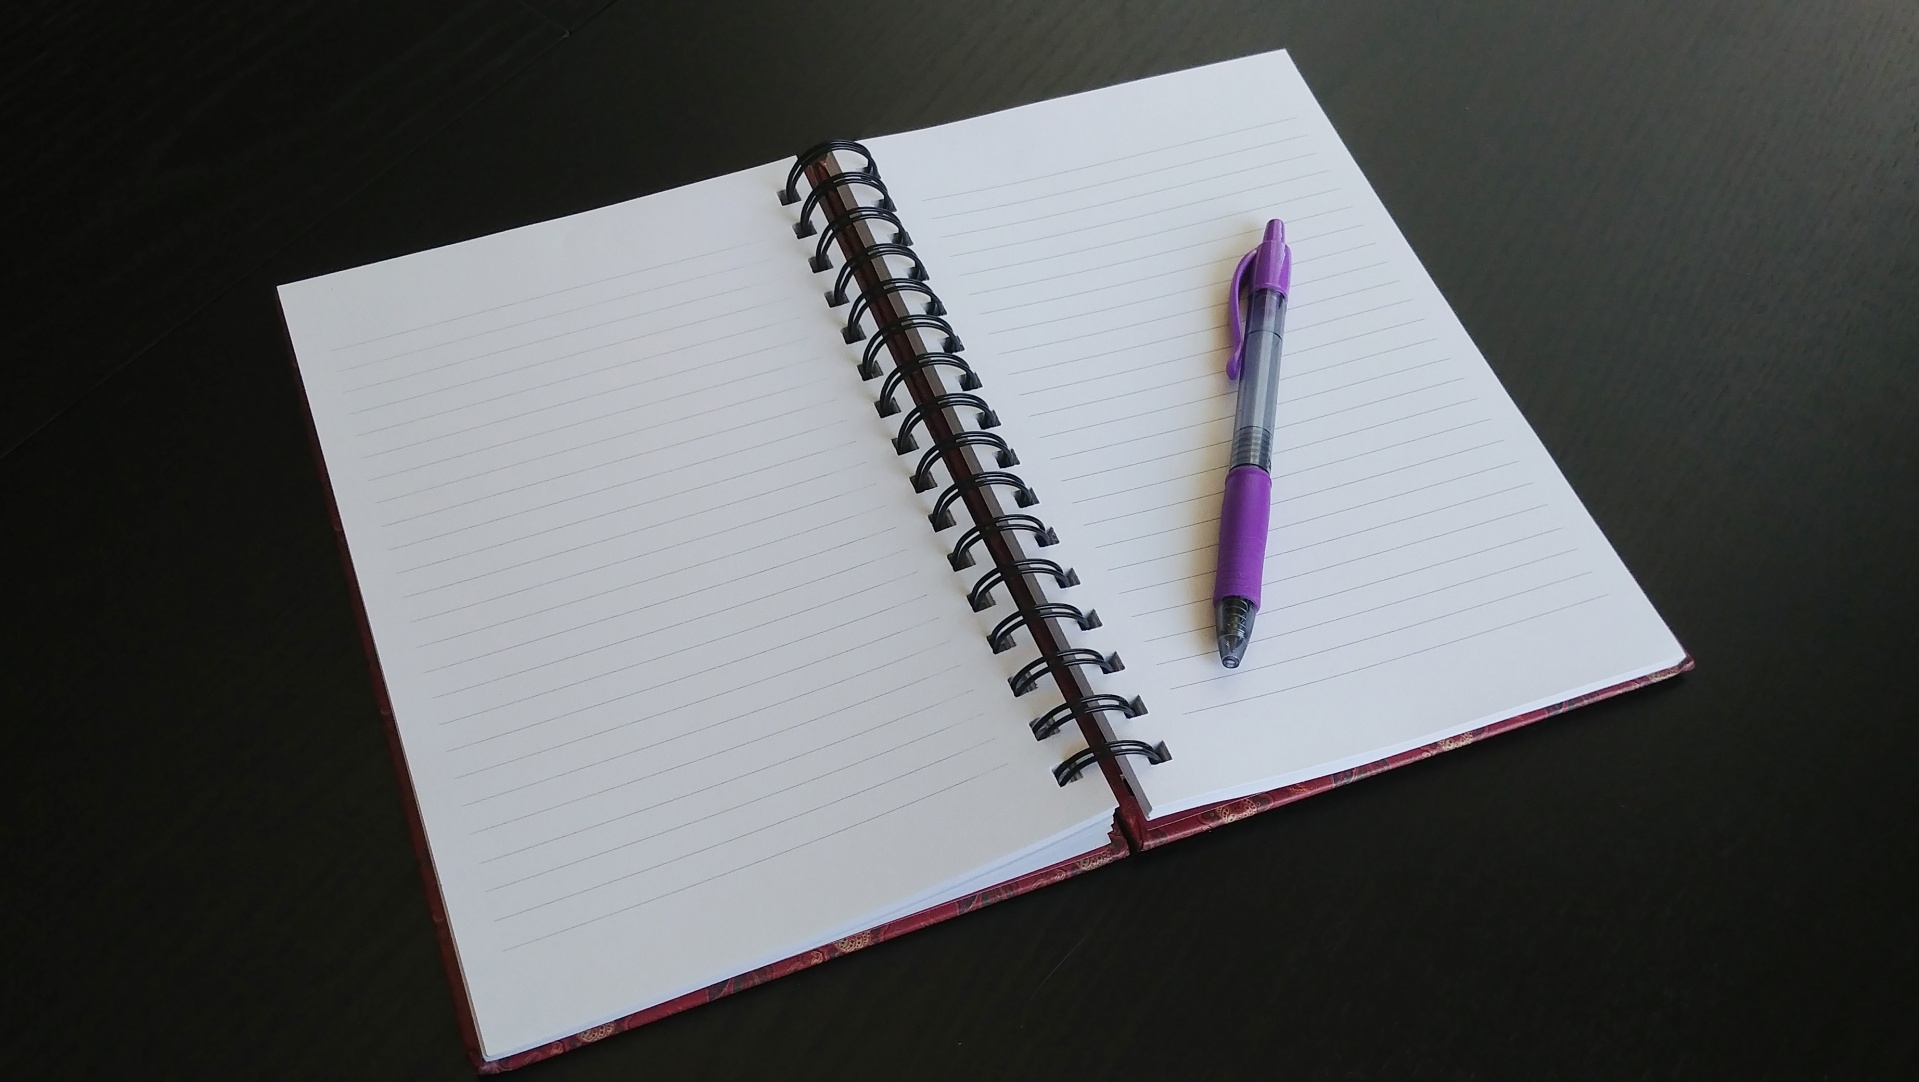 An open notebook and pen